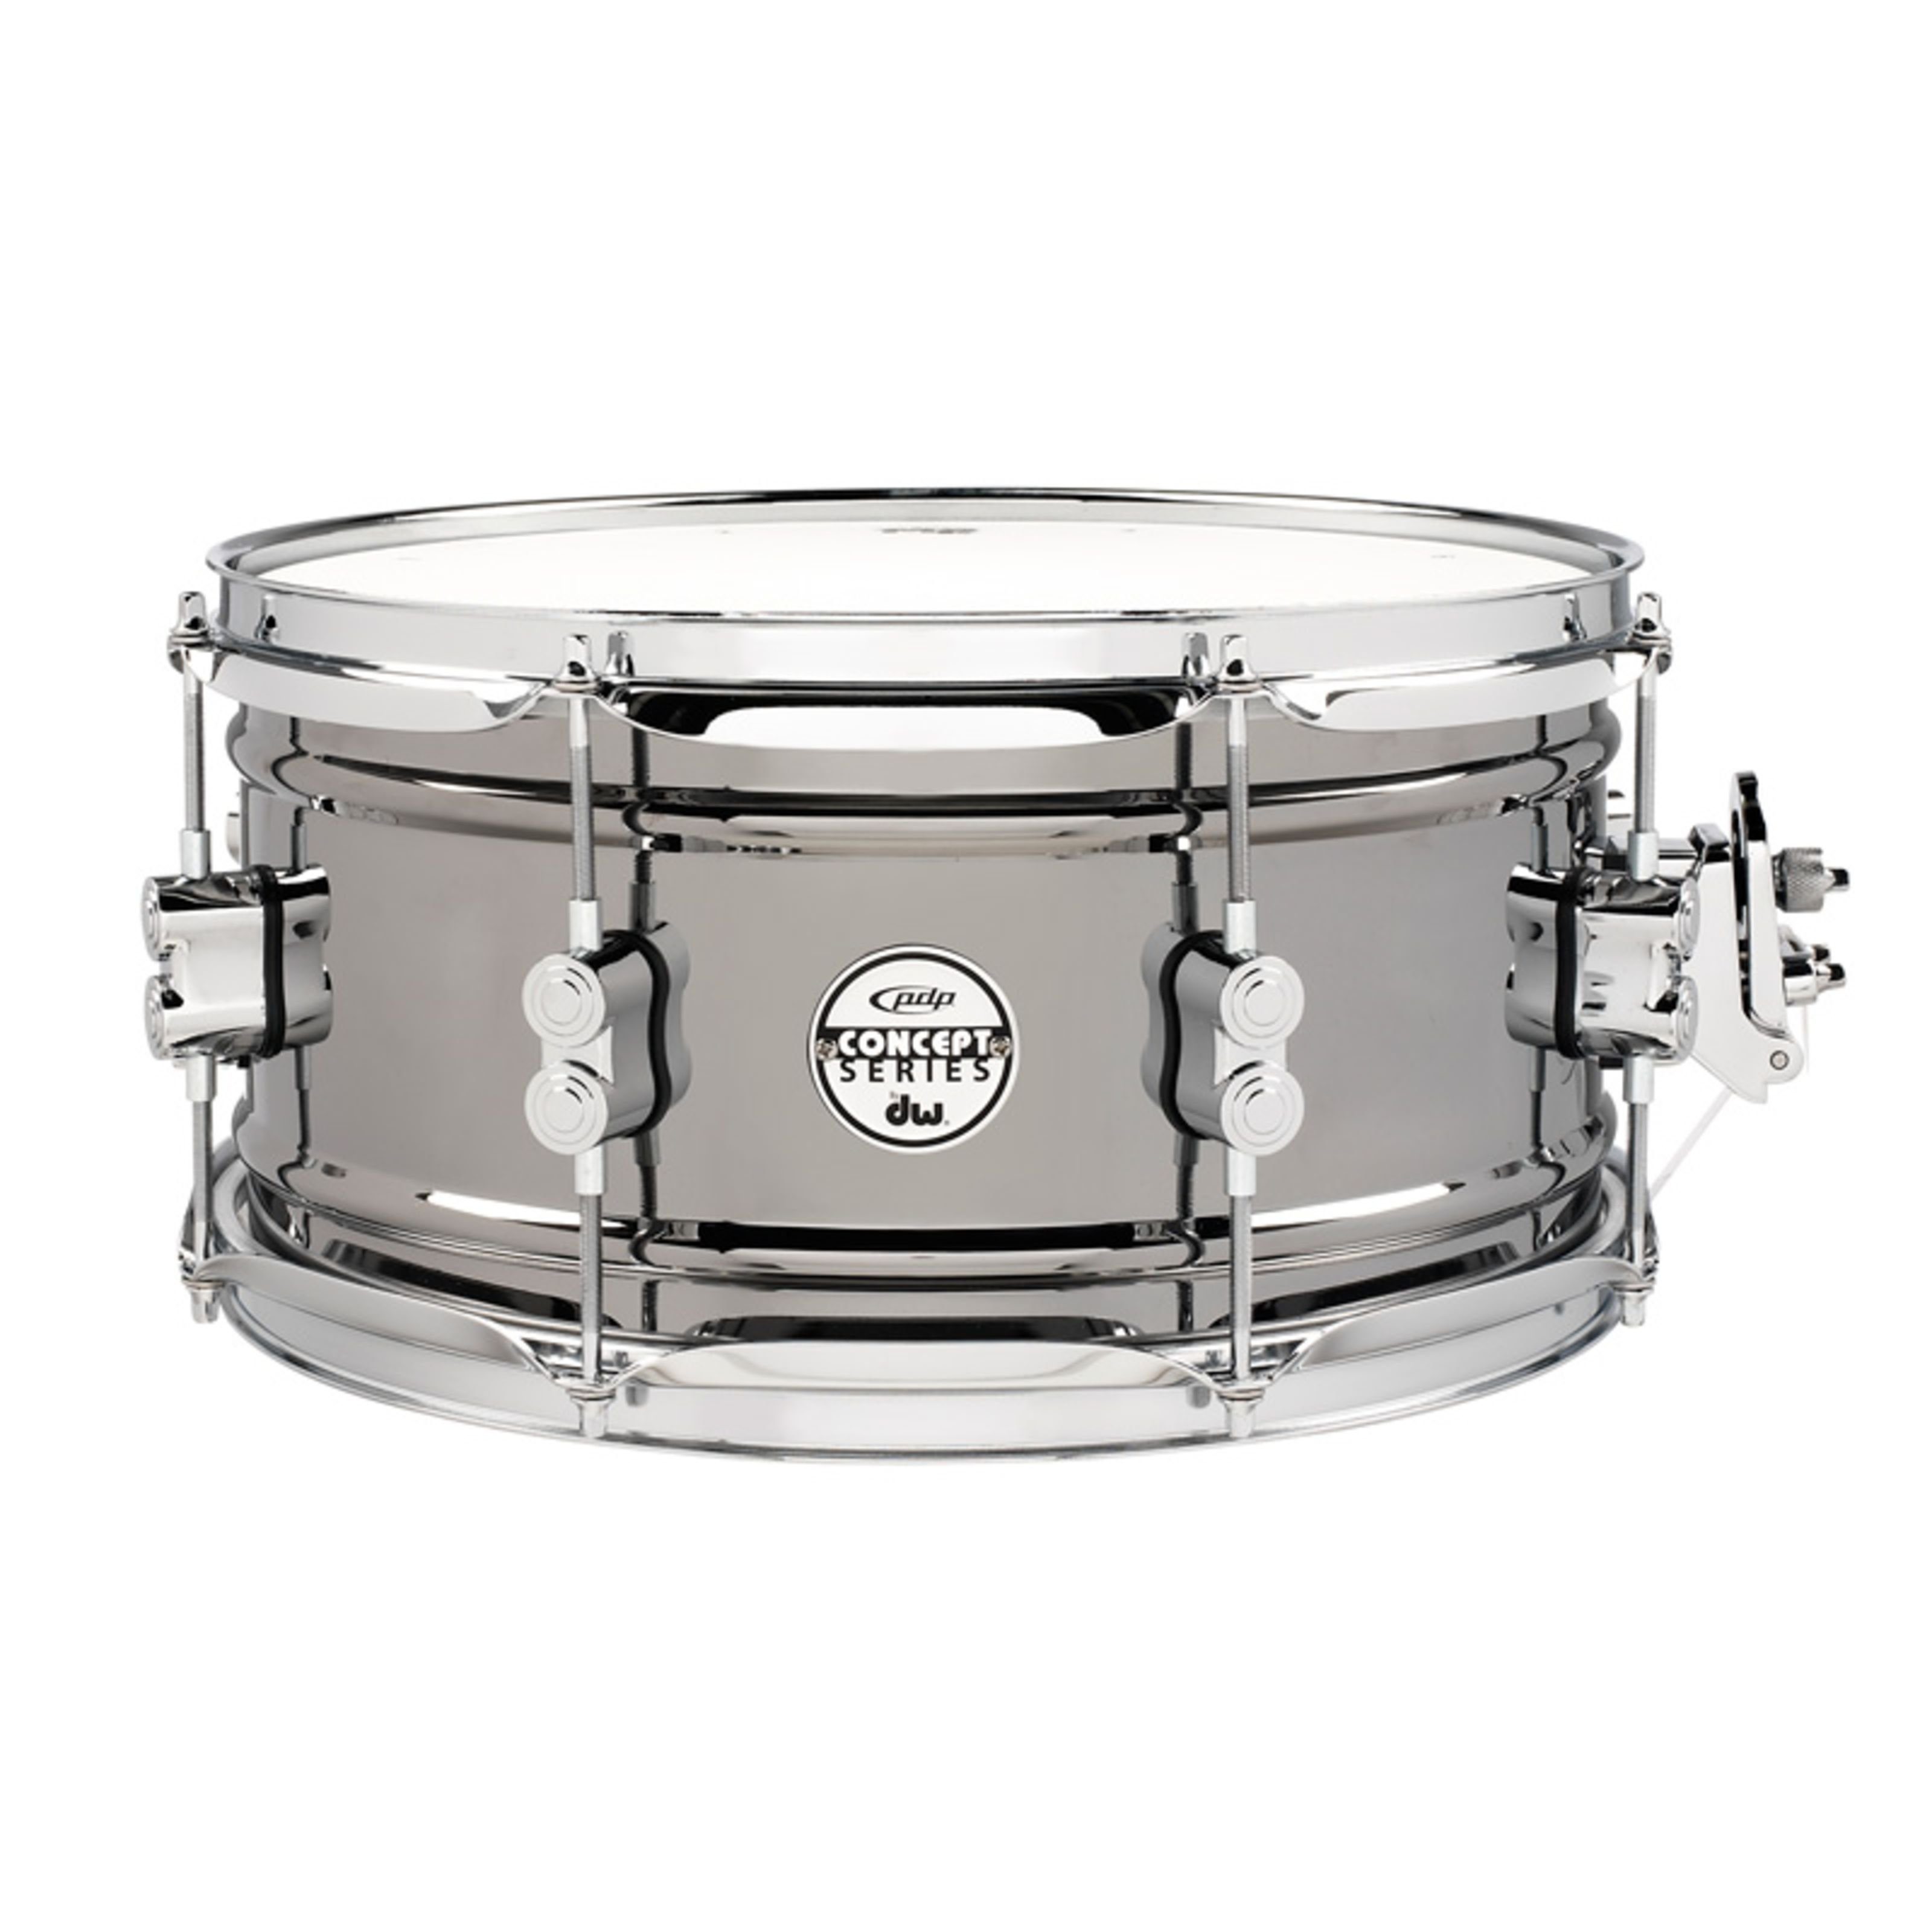 pdp Snare Drum,Black Nickel Steel Snare 13"x65", Schlagzeuge, Snare Drums, Black Nickel Steel Snare 13"x6,5" - Snare Drum